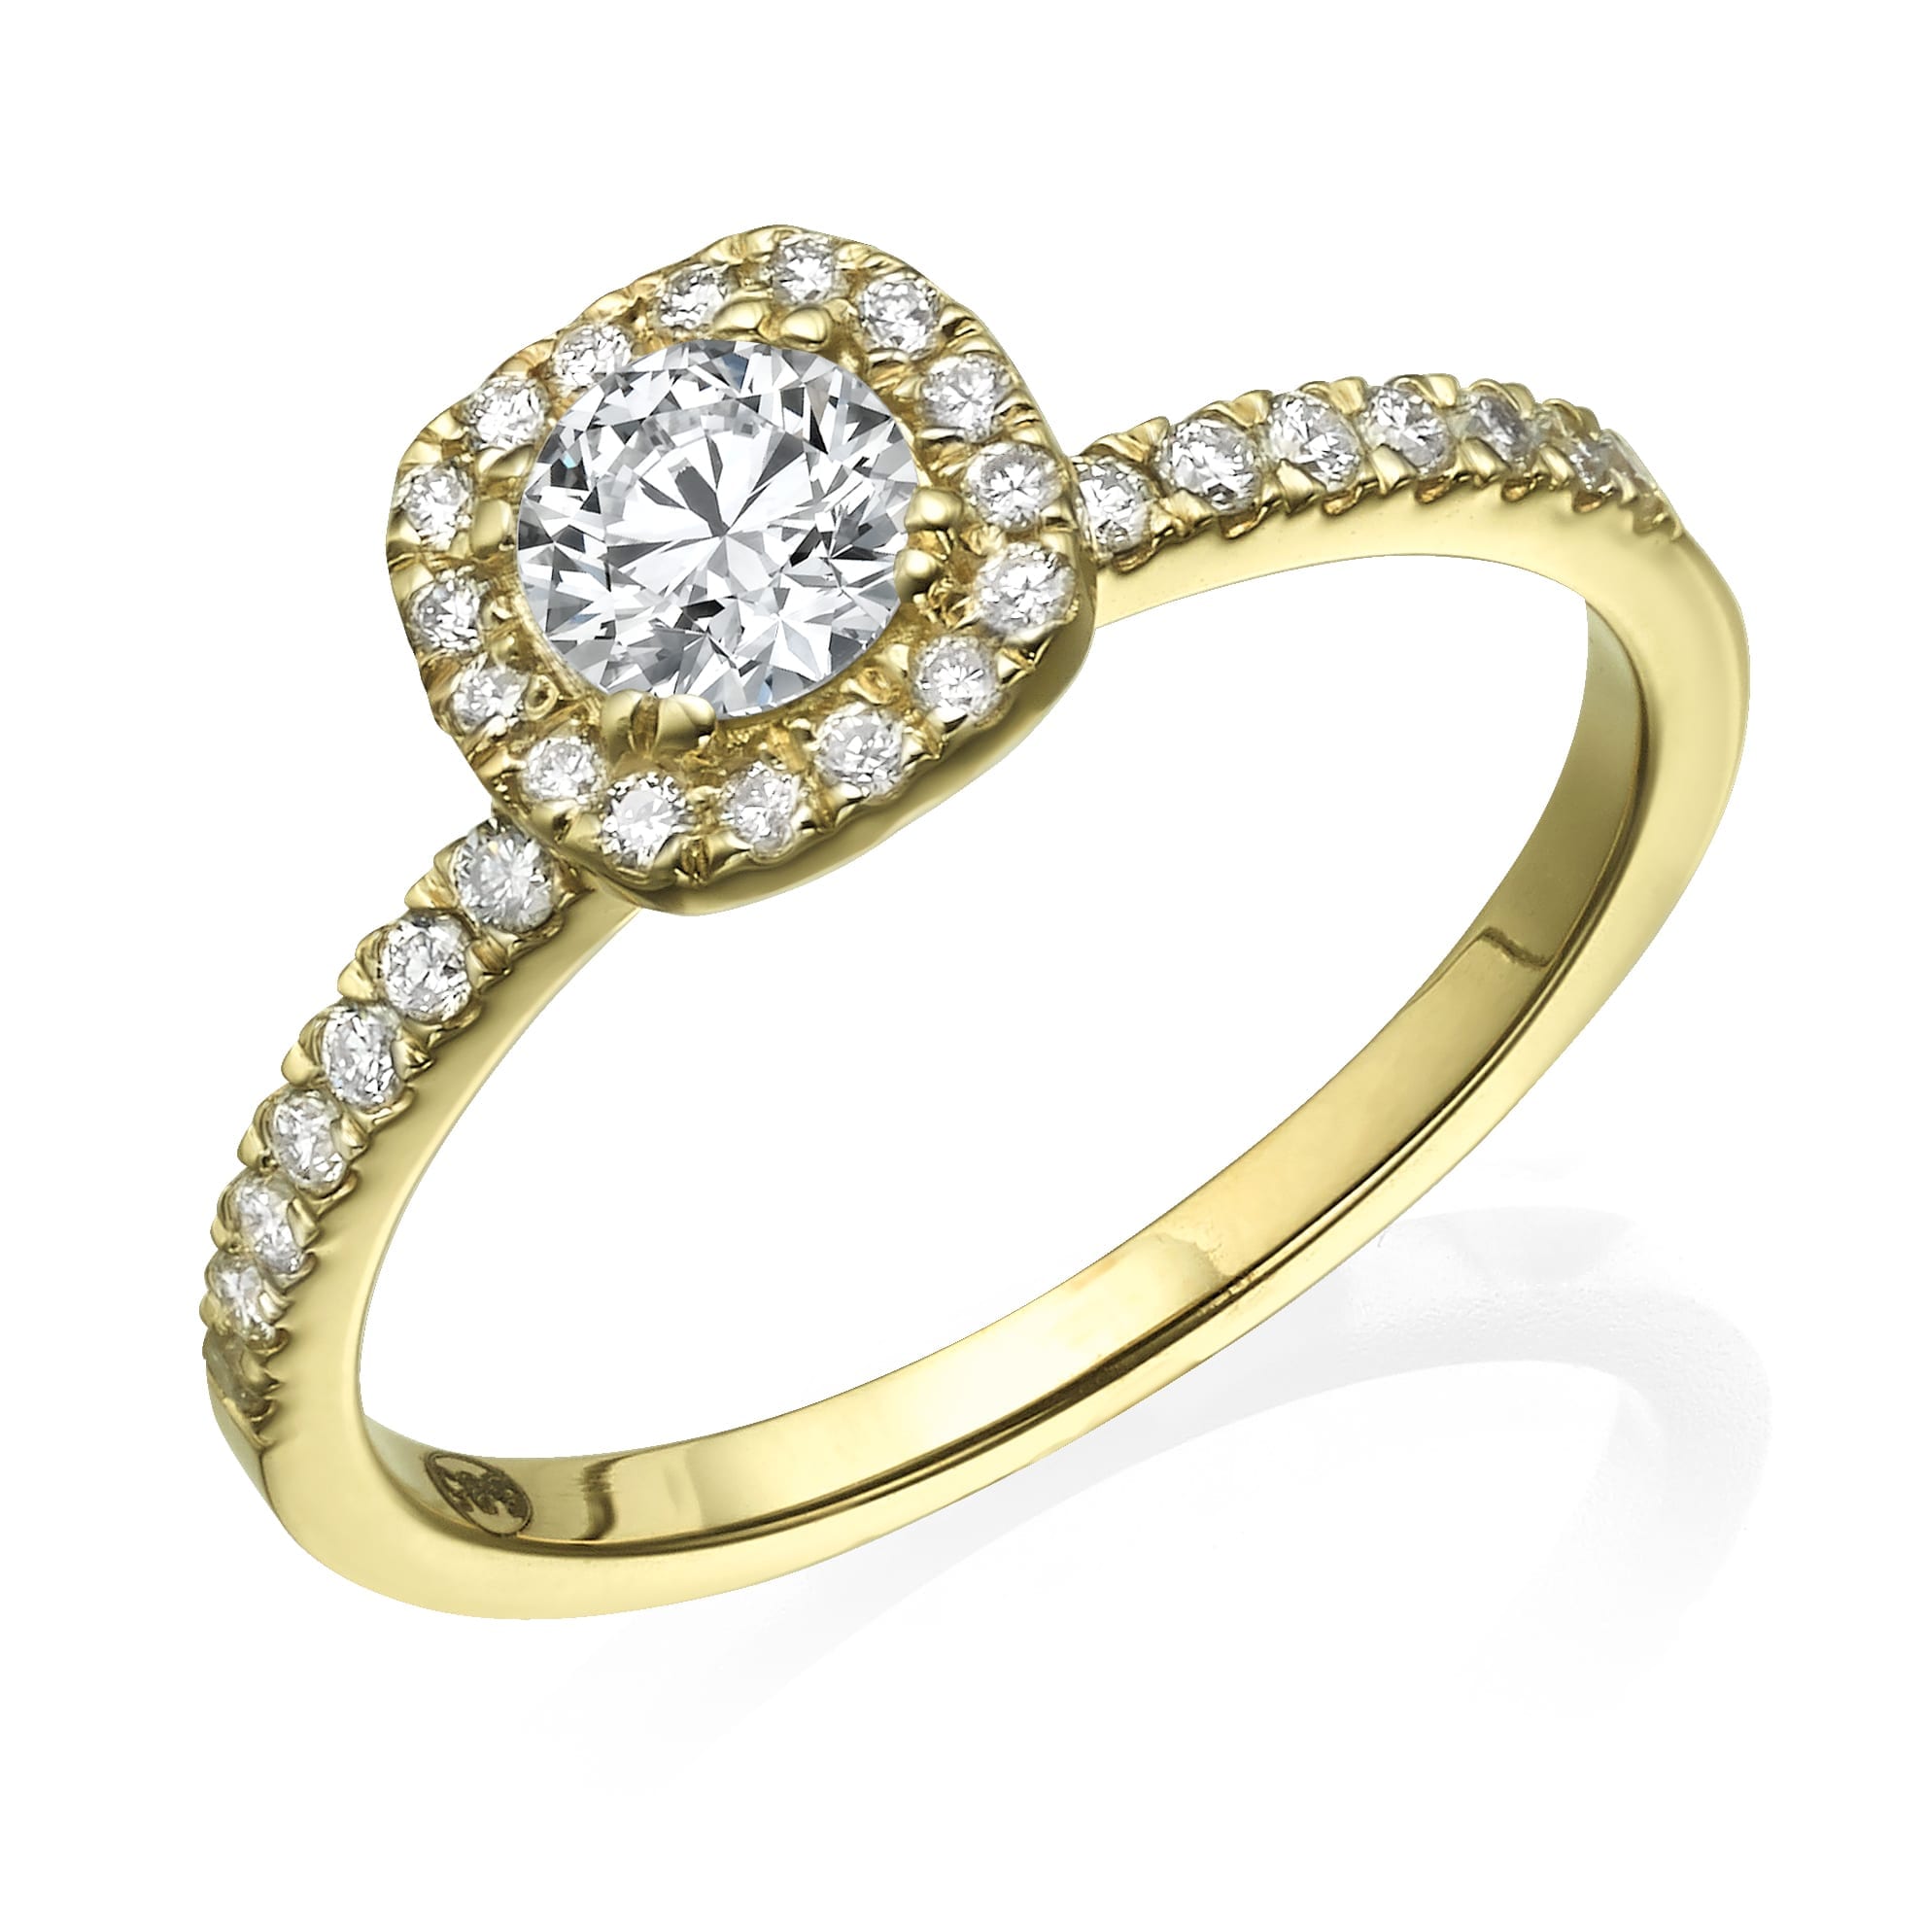 טבעת זהב עם יהלום מרכזי בחיתוך עגול בשיבוץ הילה, מלווה ביהלומים קטנים יותר משובצים לאורך הרצועה.